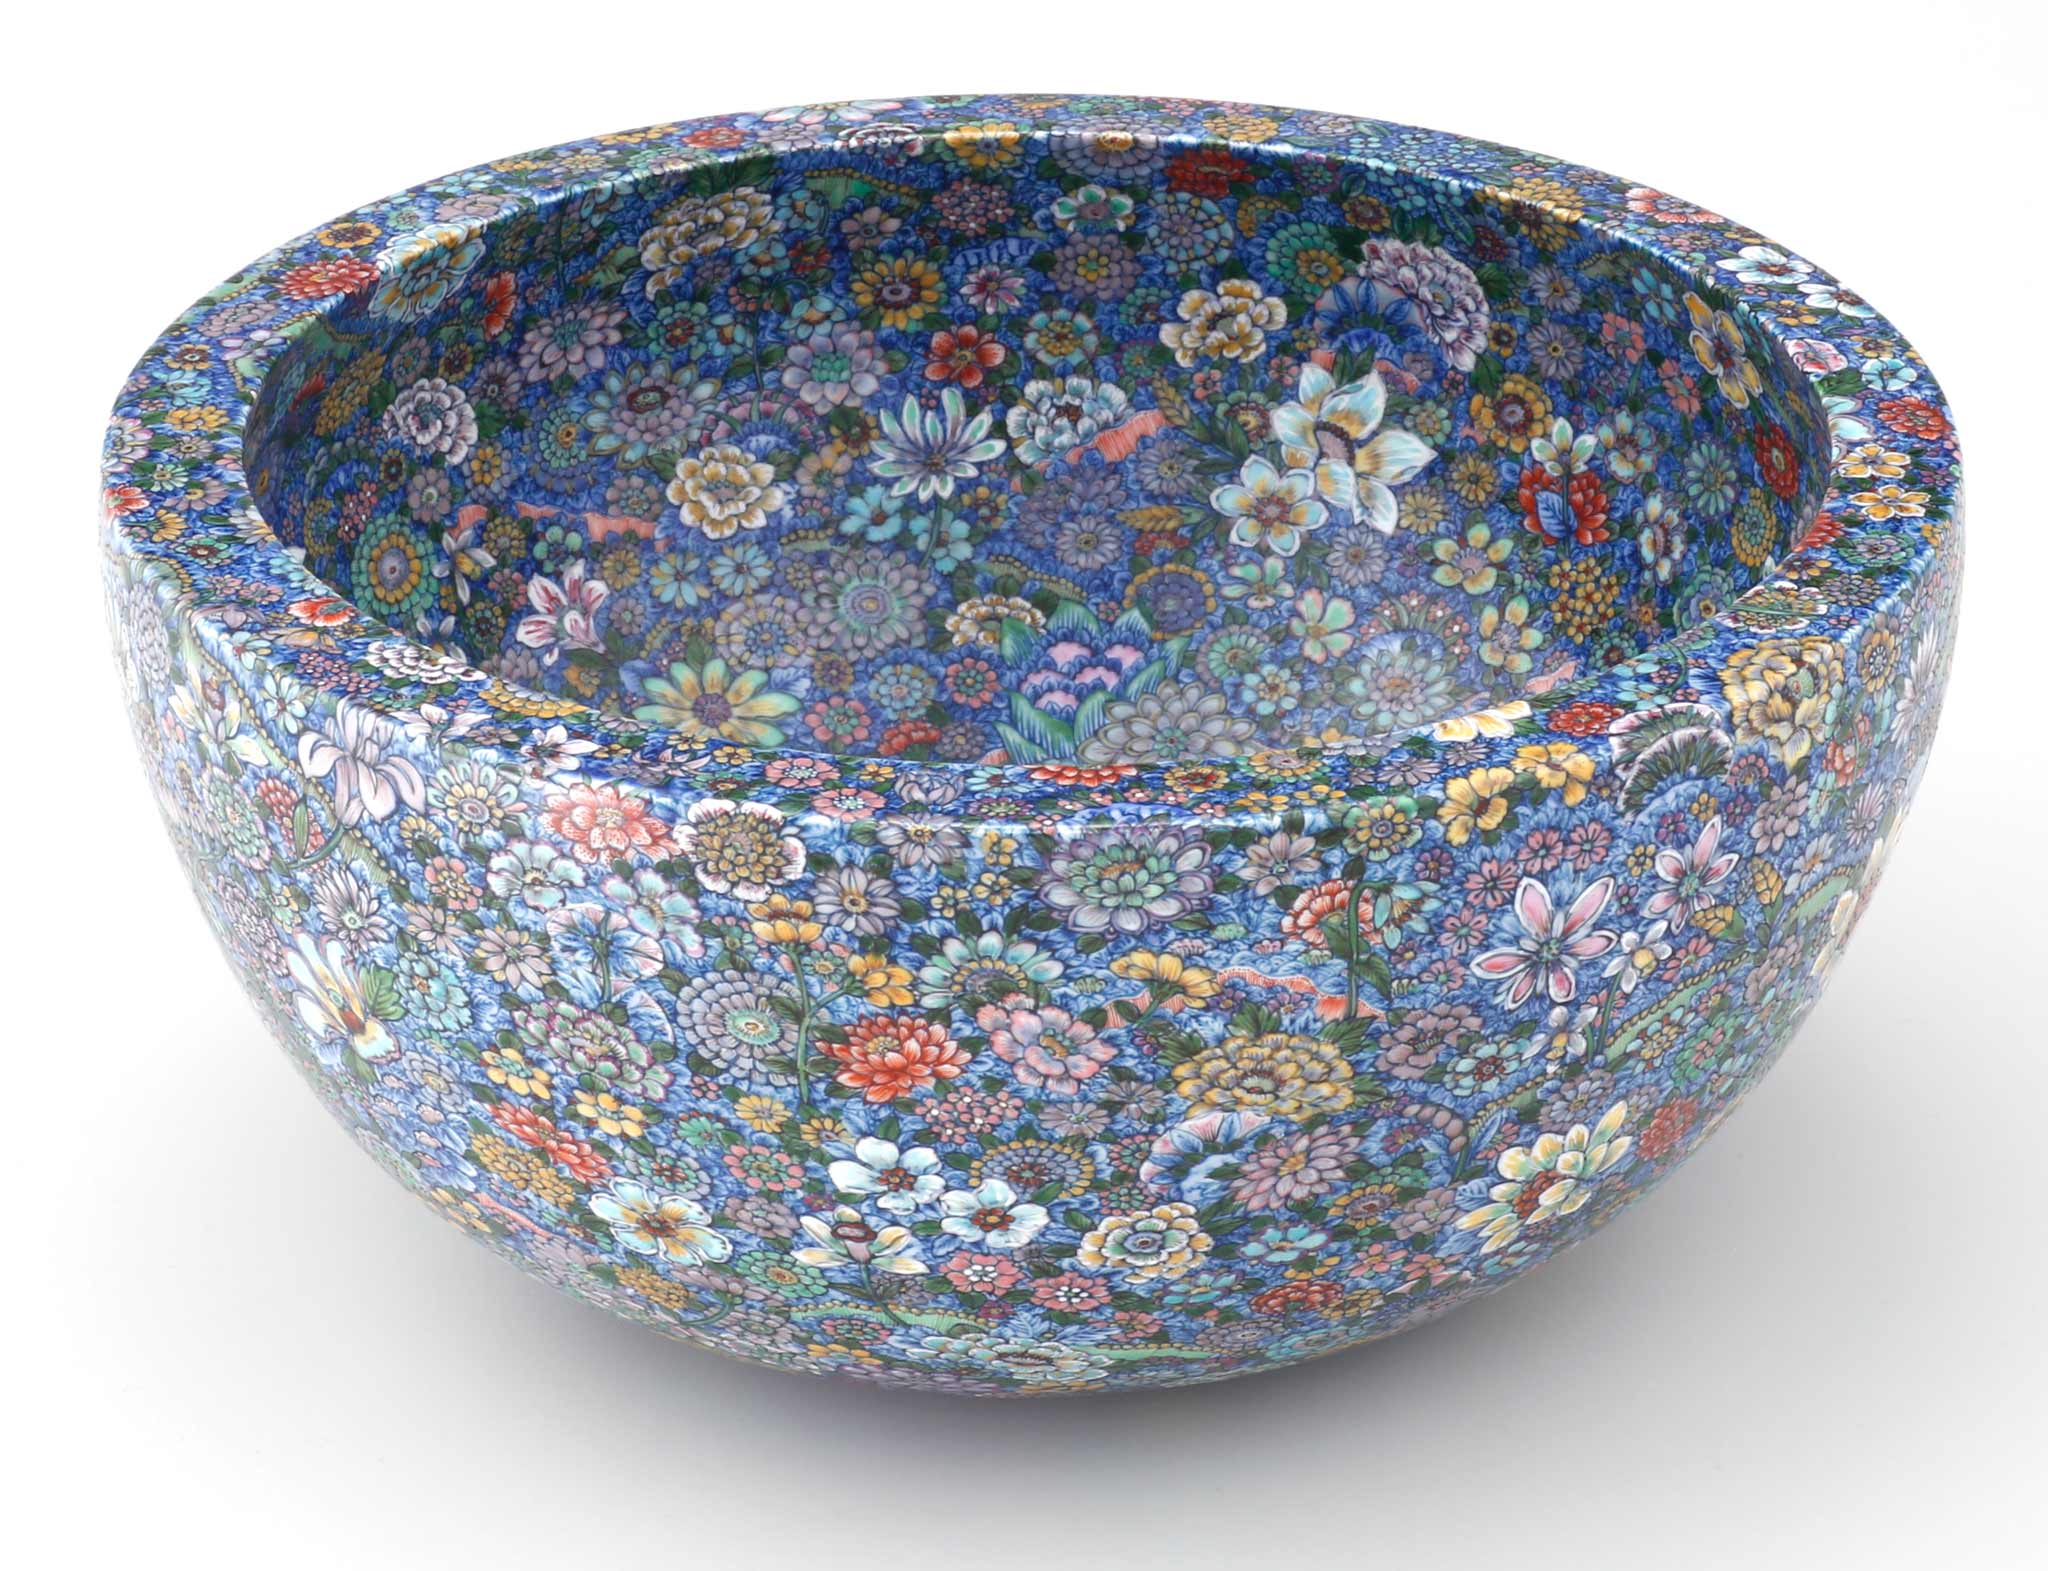 Bowl with 'Ten Thousand Flowers' Motif by Yuki Hayama. | Image courtesy of Joseph Carini Carpets.